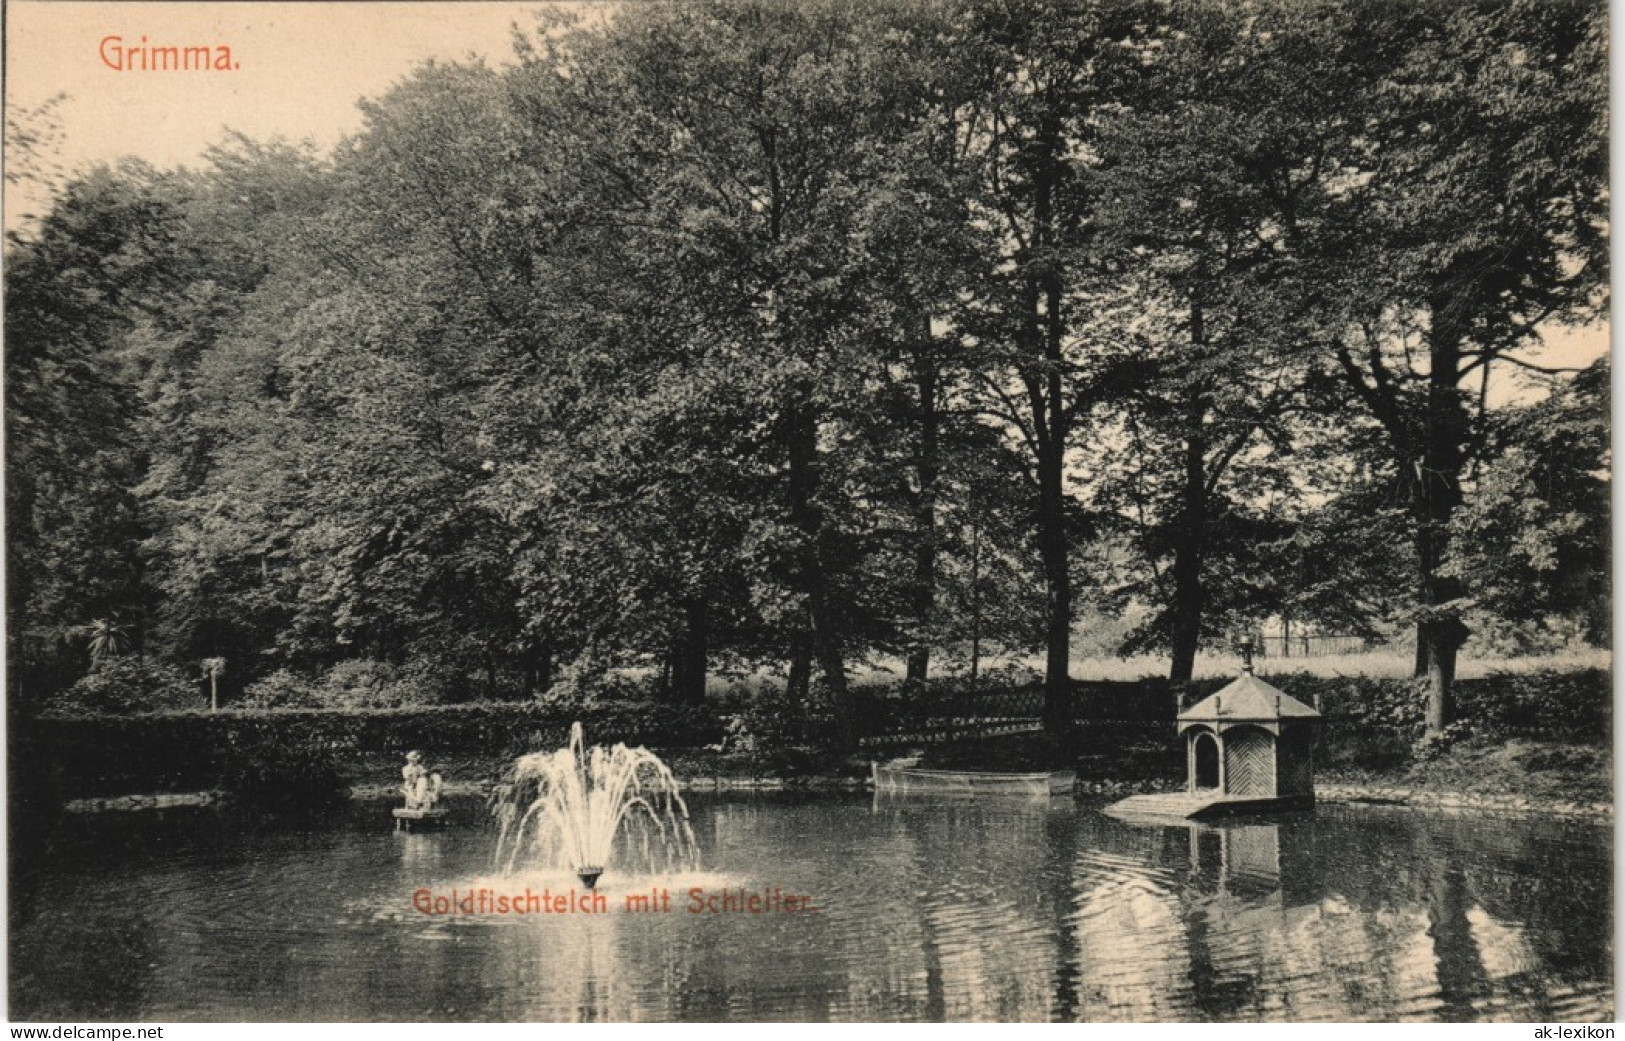 Ansichtskarte Grimma Goldfischteich - Springbrunnen 1915 - Grimma